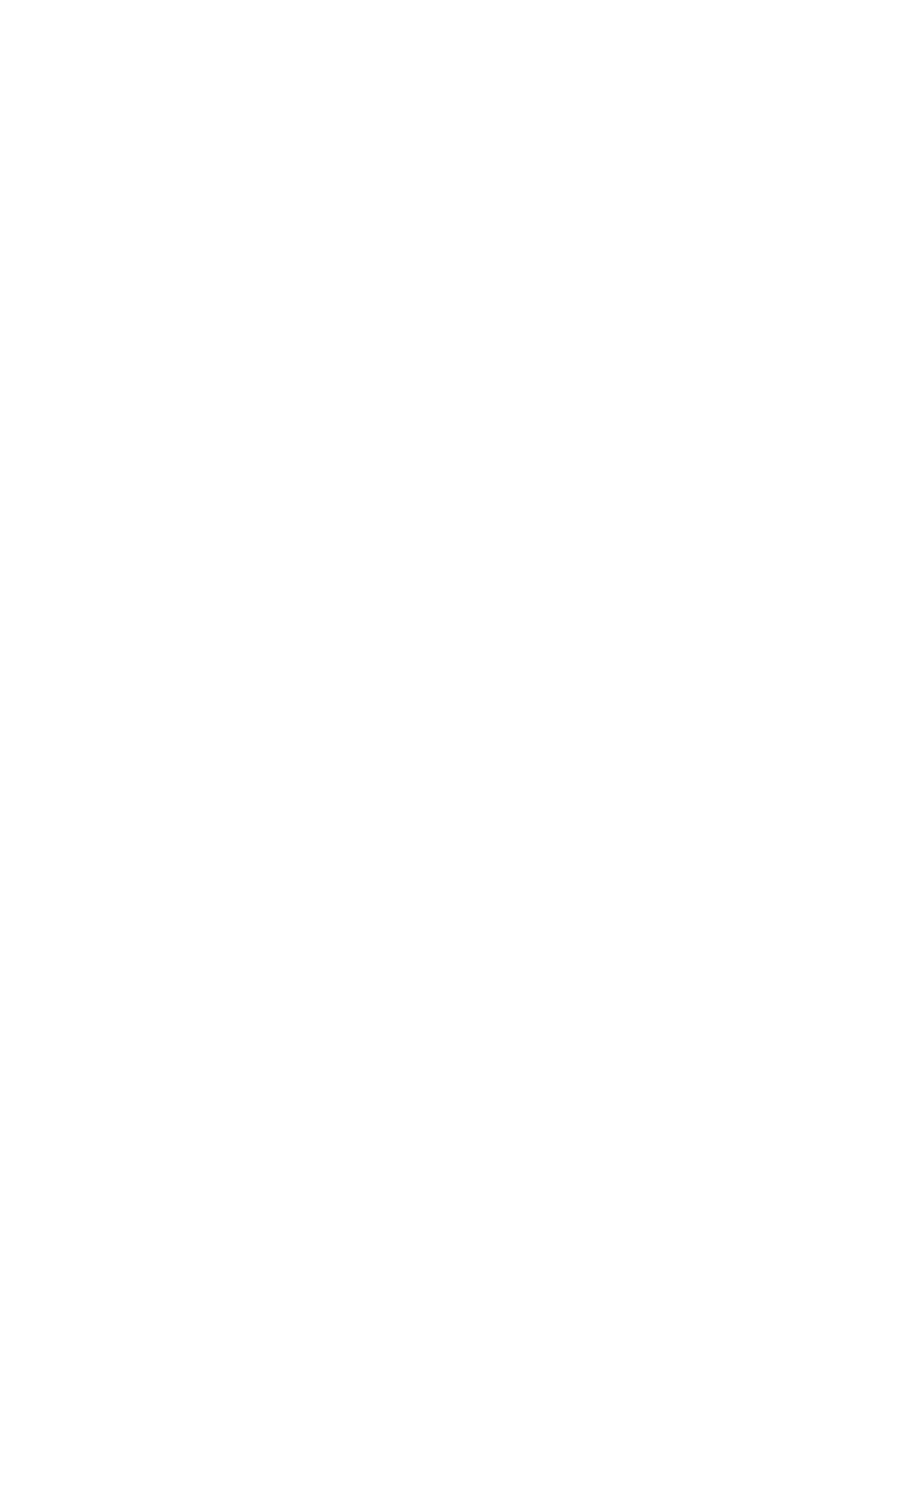 Urban Hang Suite RVA